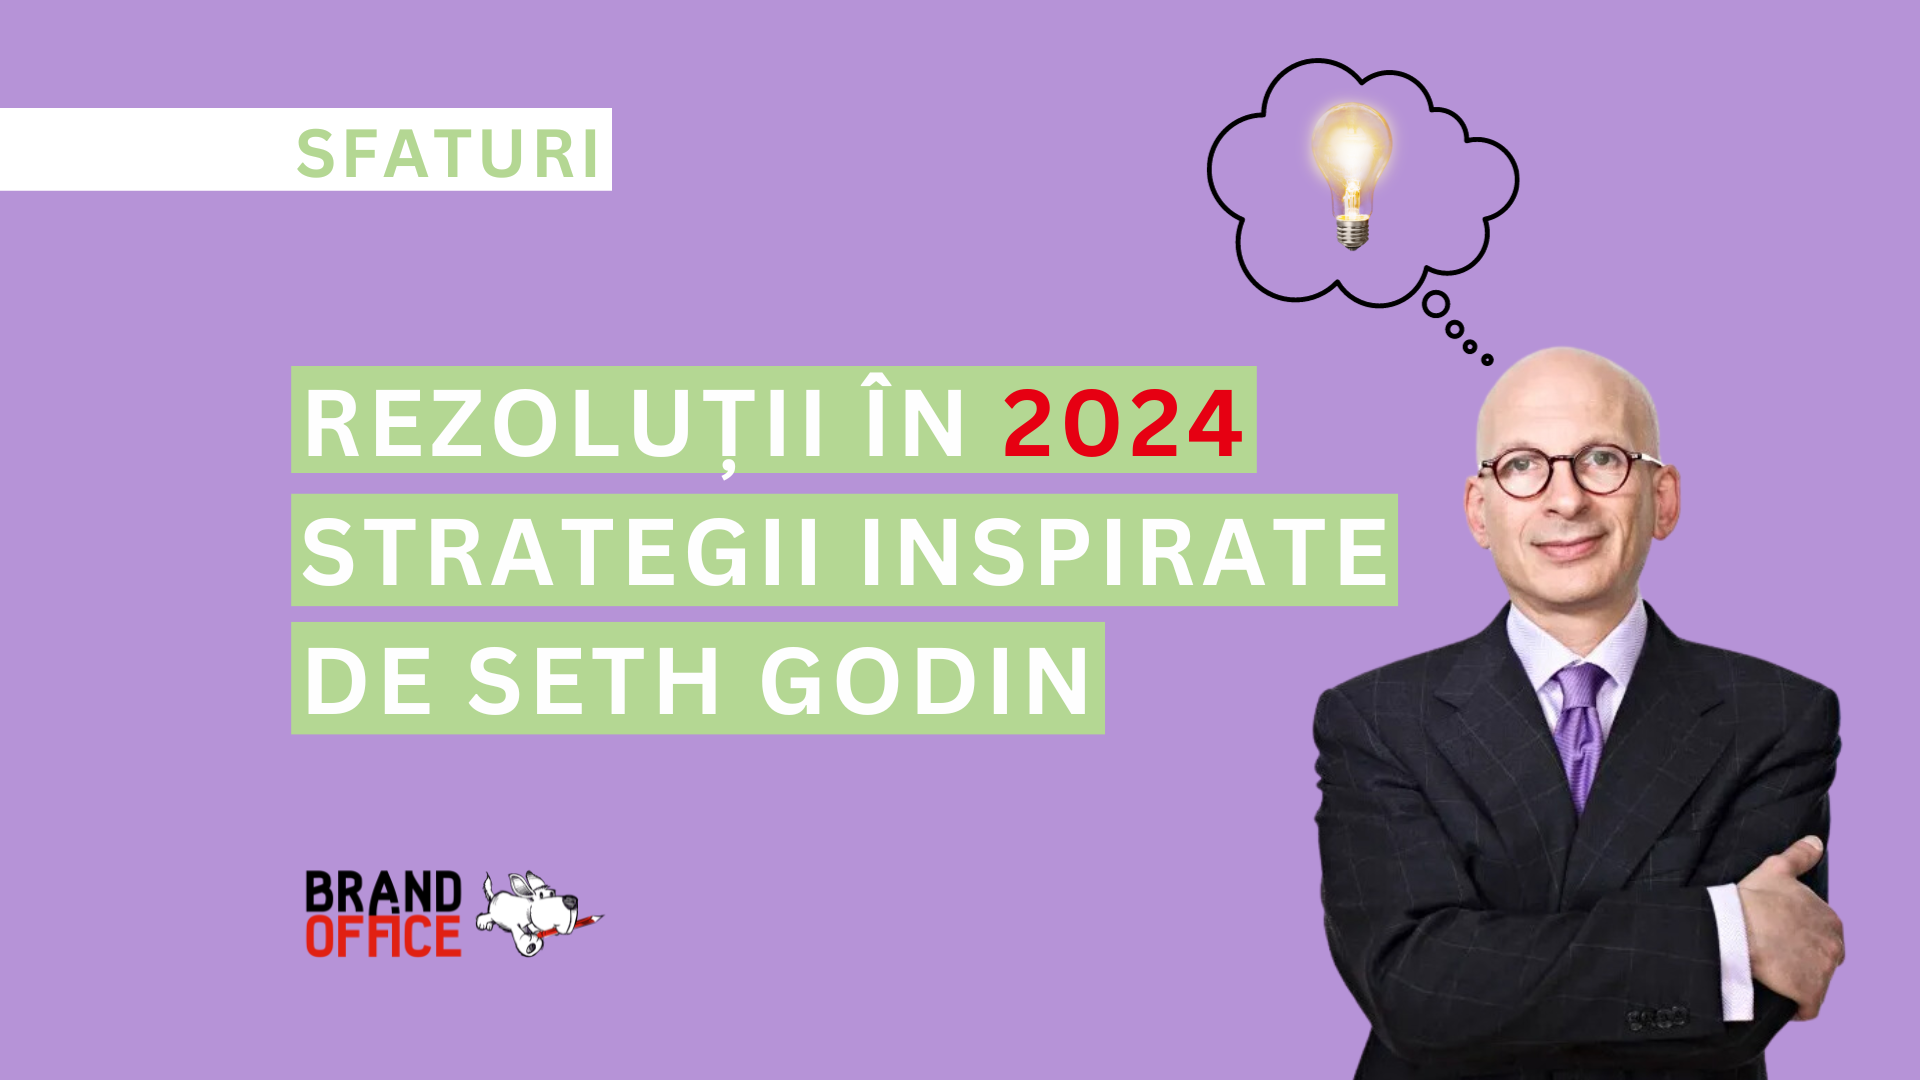 De la intentie la actiune - Strategii pentru rezolutiile din 2024, inspirate de Seth Godin